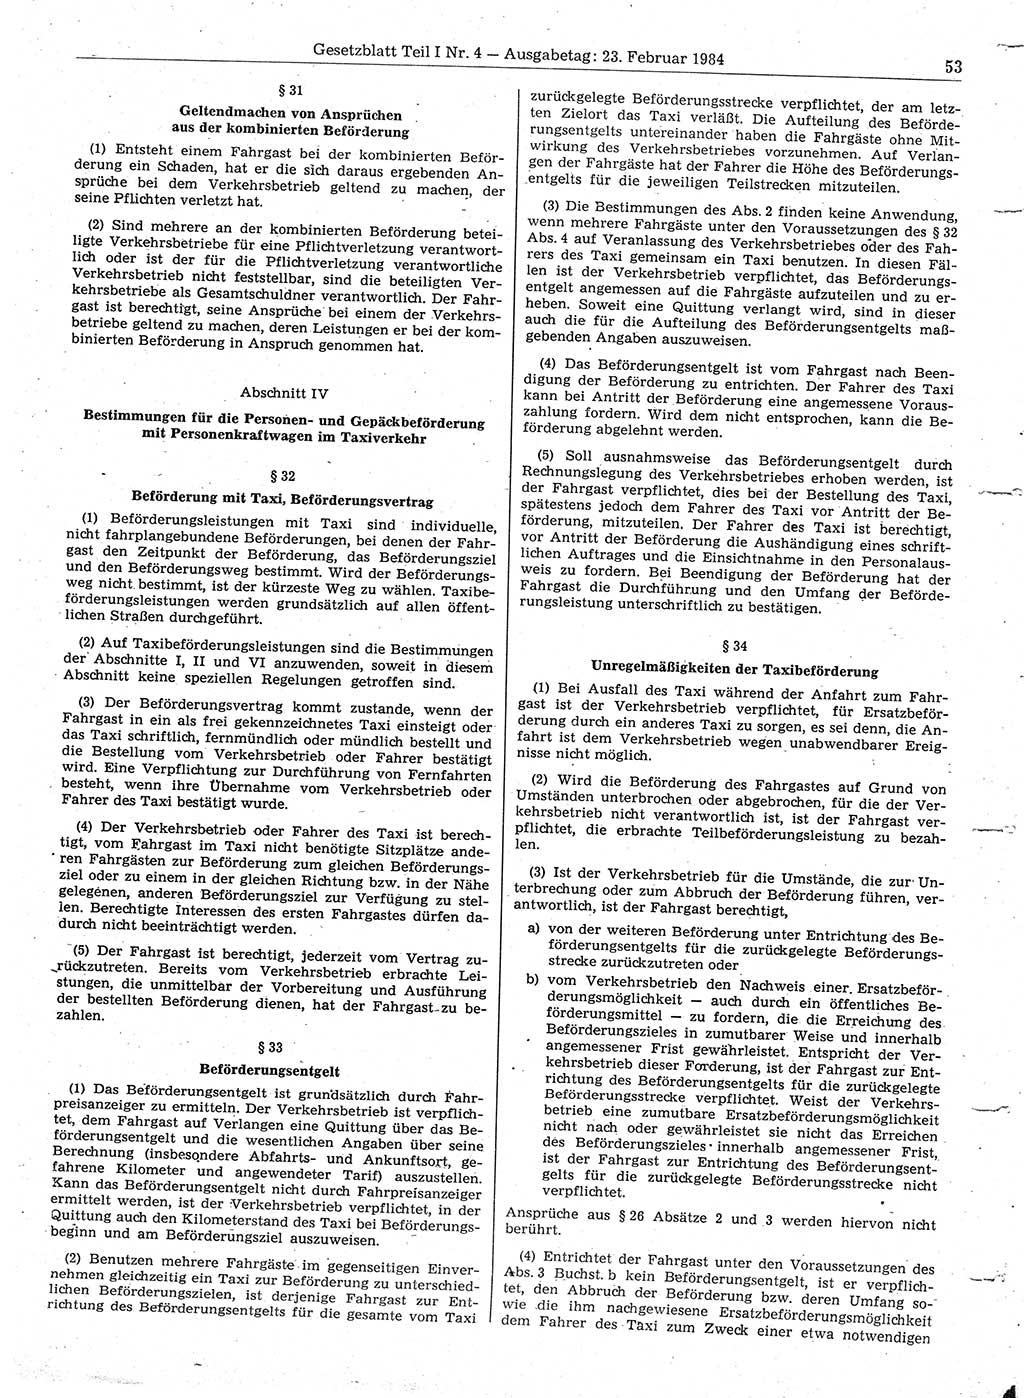 Gesetzblatt (GBl.) der Deutschen Demokratischen Republik (DDR) Teil Ⅰ 1984, Seite 53 (GBl. DDR Ⅰ 1984, S. 53)